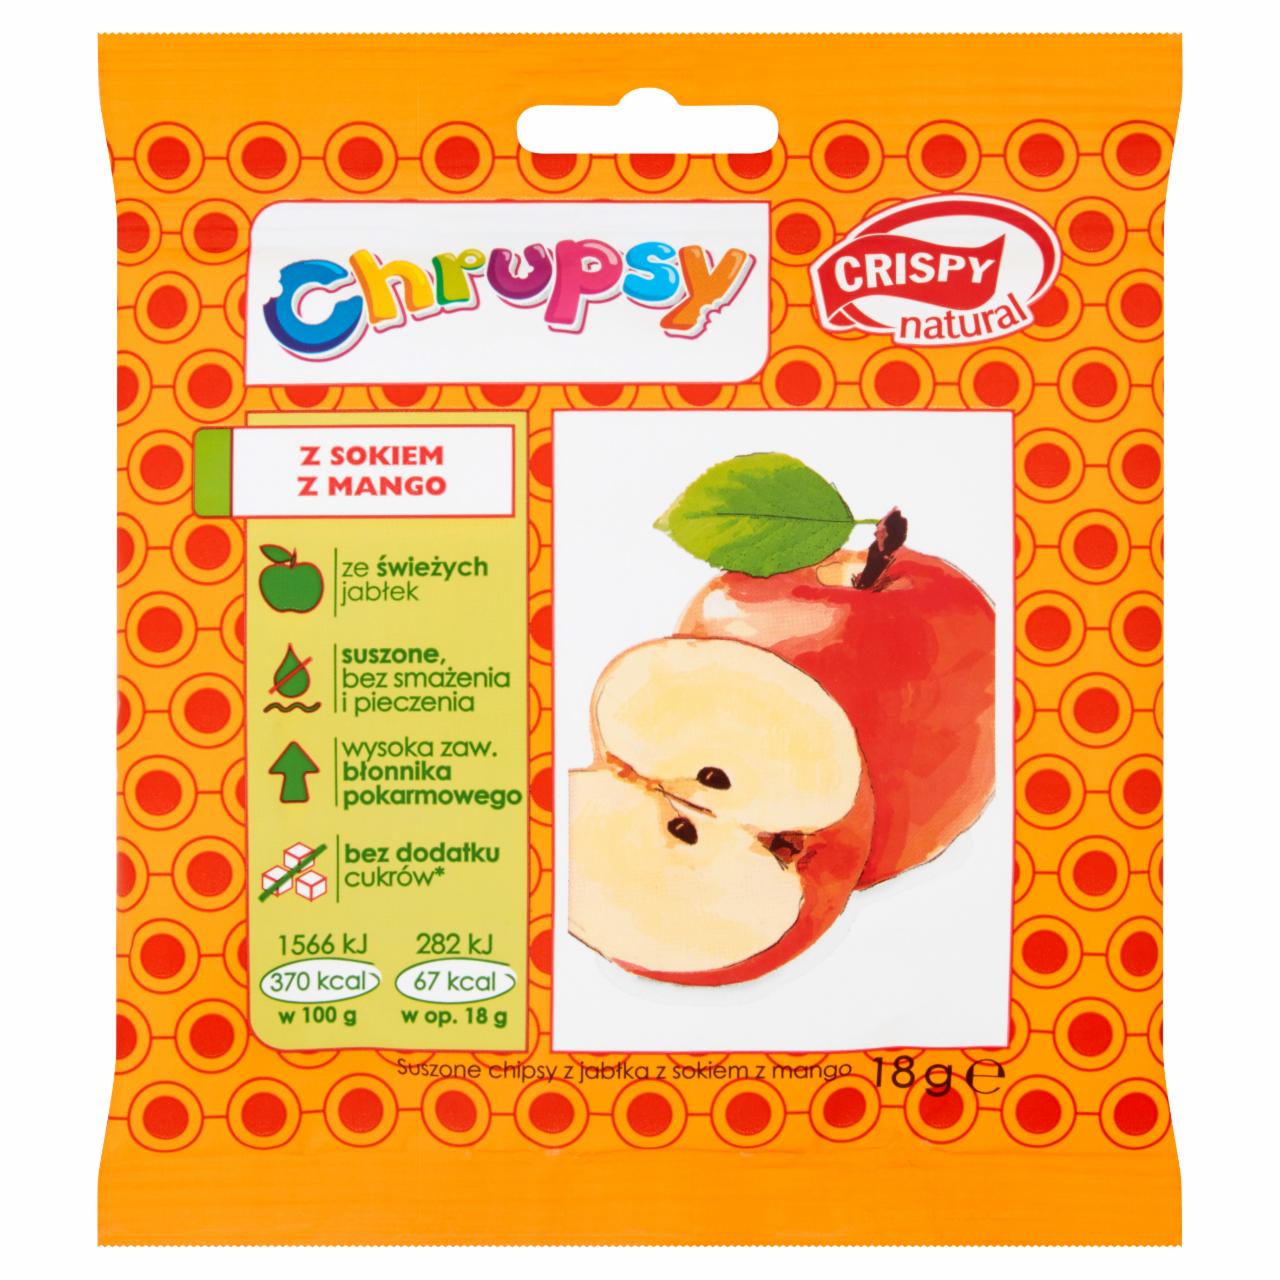 Zdjęcia - Crispy Natural Suszone plastry jabłek o smaku mango 18 g